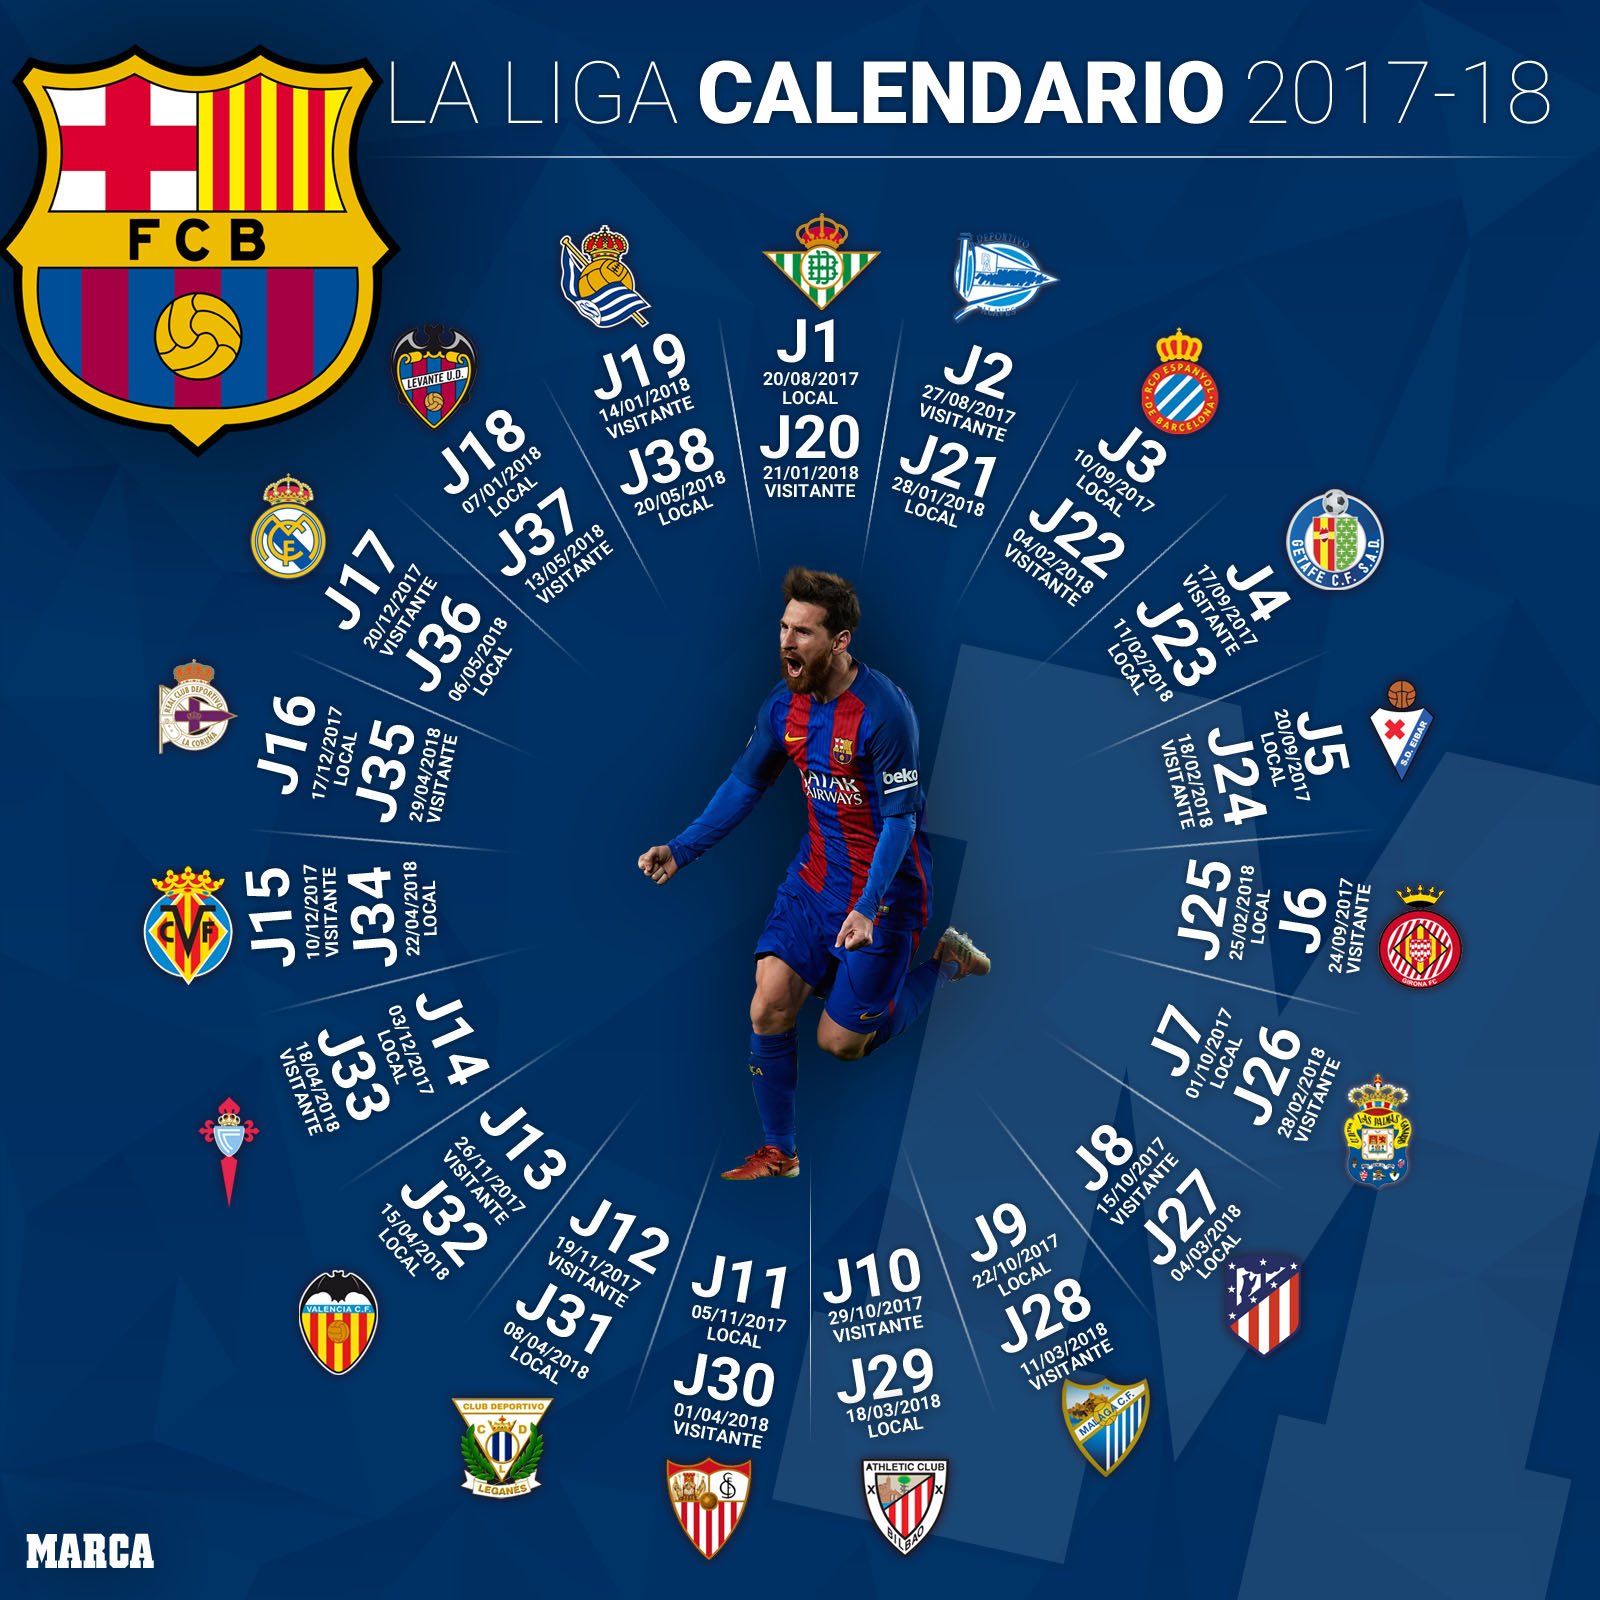 MARCA on Twitter: "📌 El calendario de #LaLiga 2017/18 del 📆 https://t.co/Mbhm9cPsrw https://t.co/vHrWIanOaW" / Twitter